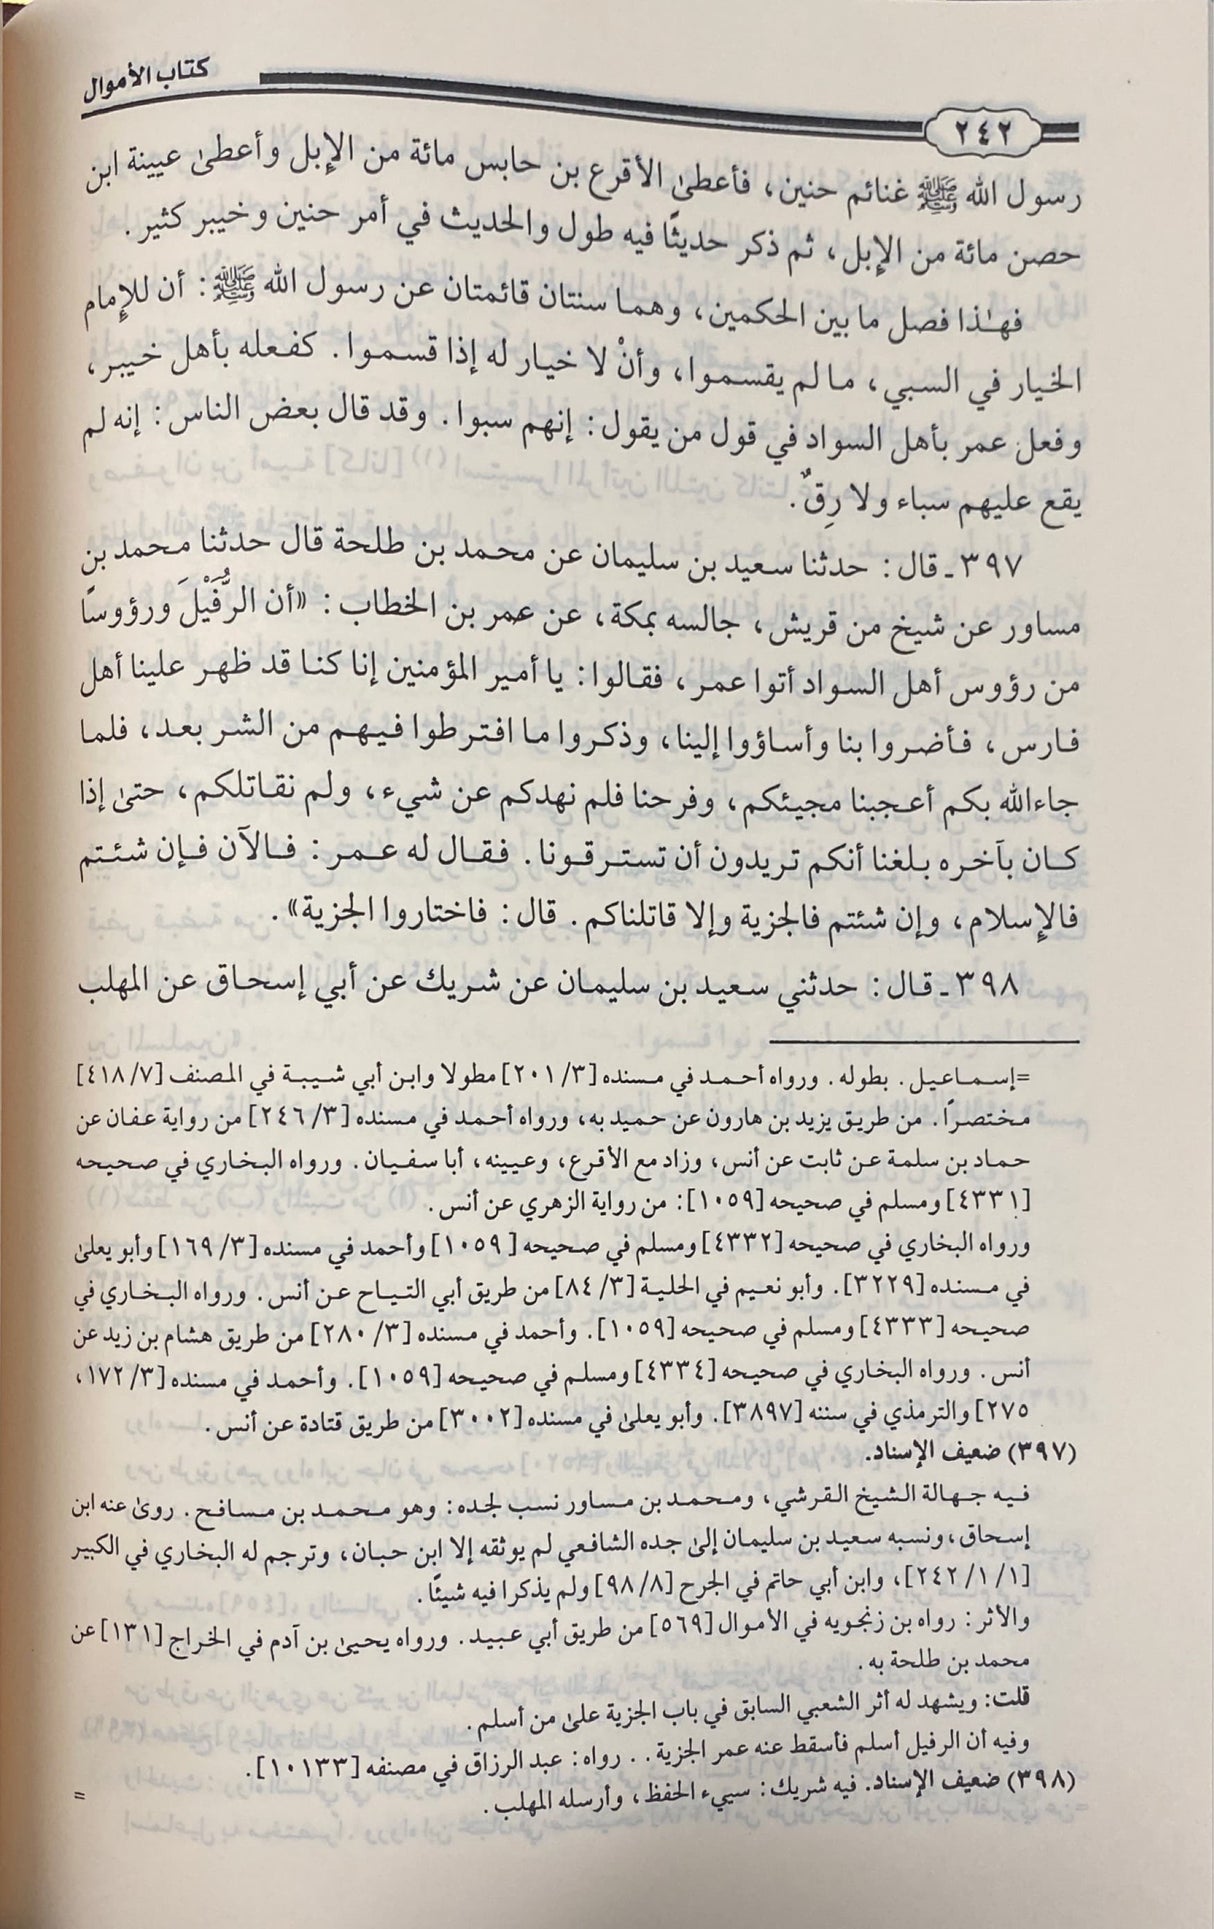 كتاب الاموال     Kitabul Amwal (2 Volume Set)